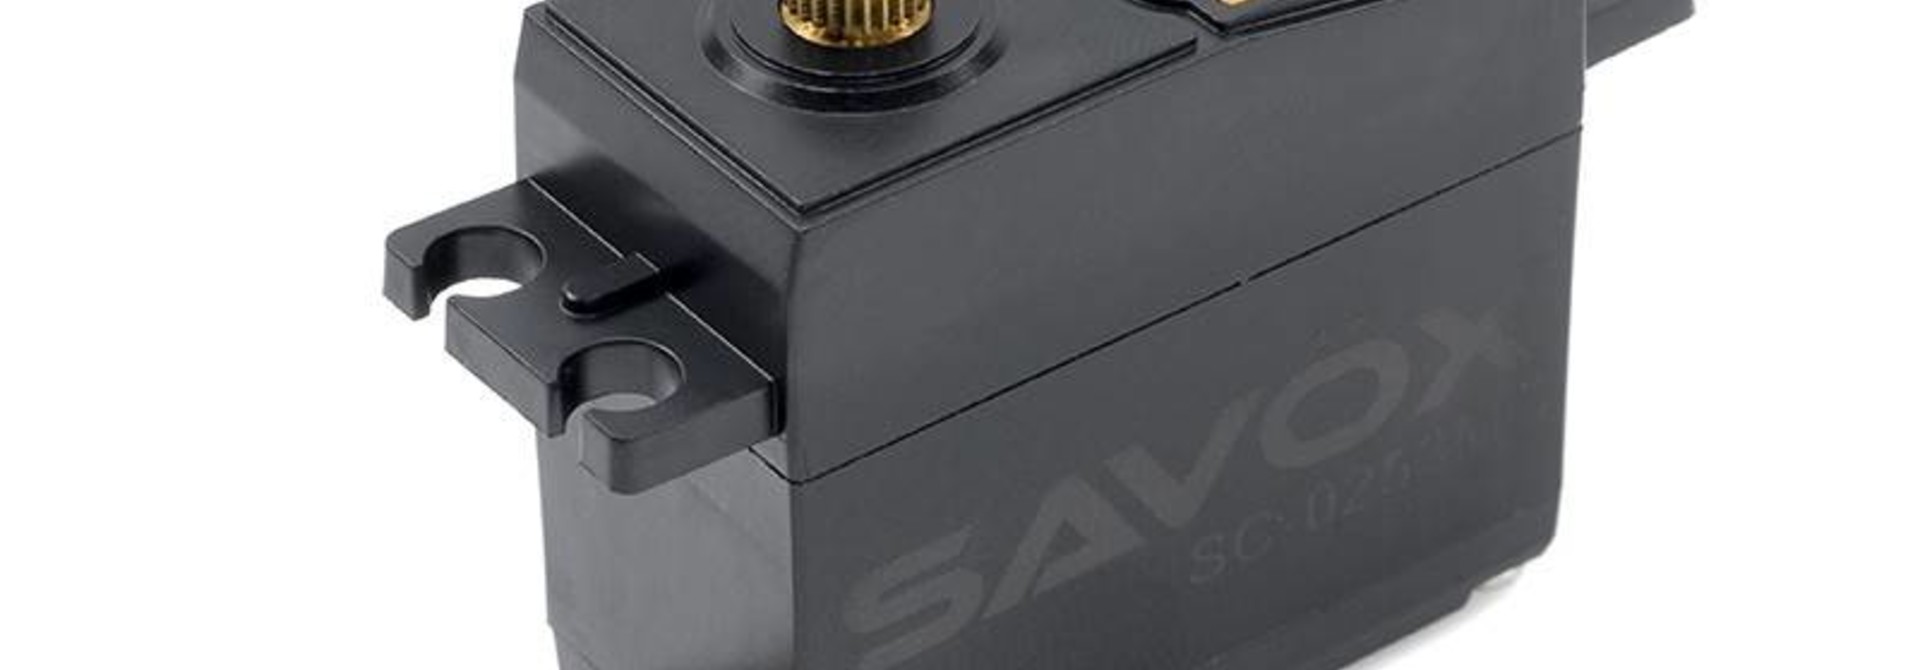 Savox - Servo - SC-0253MG - Digital - DC Motor - Metaal tandwielen